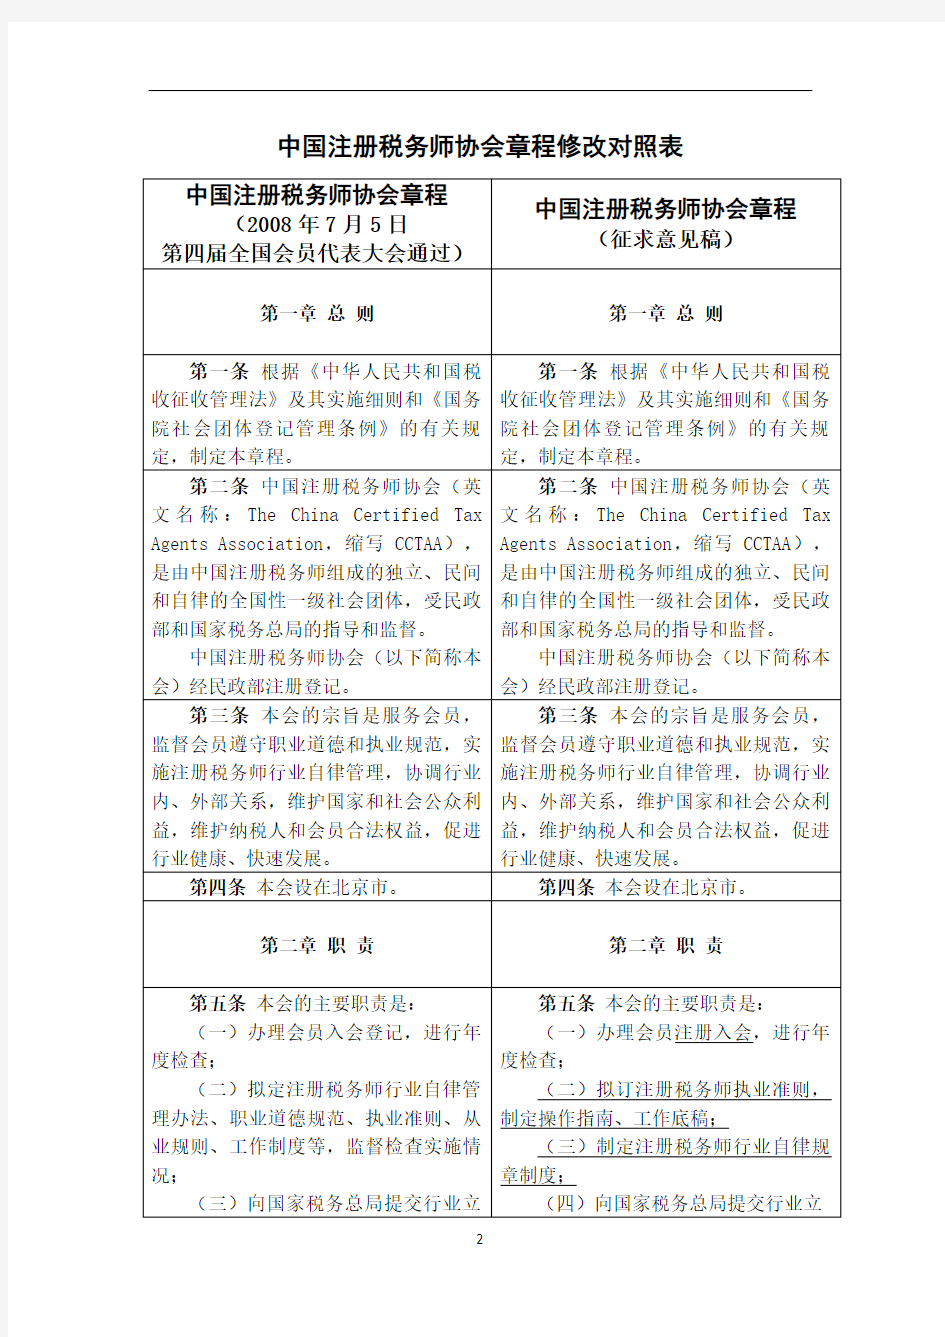 中国注册税务师协会章程修改对照表